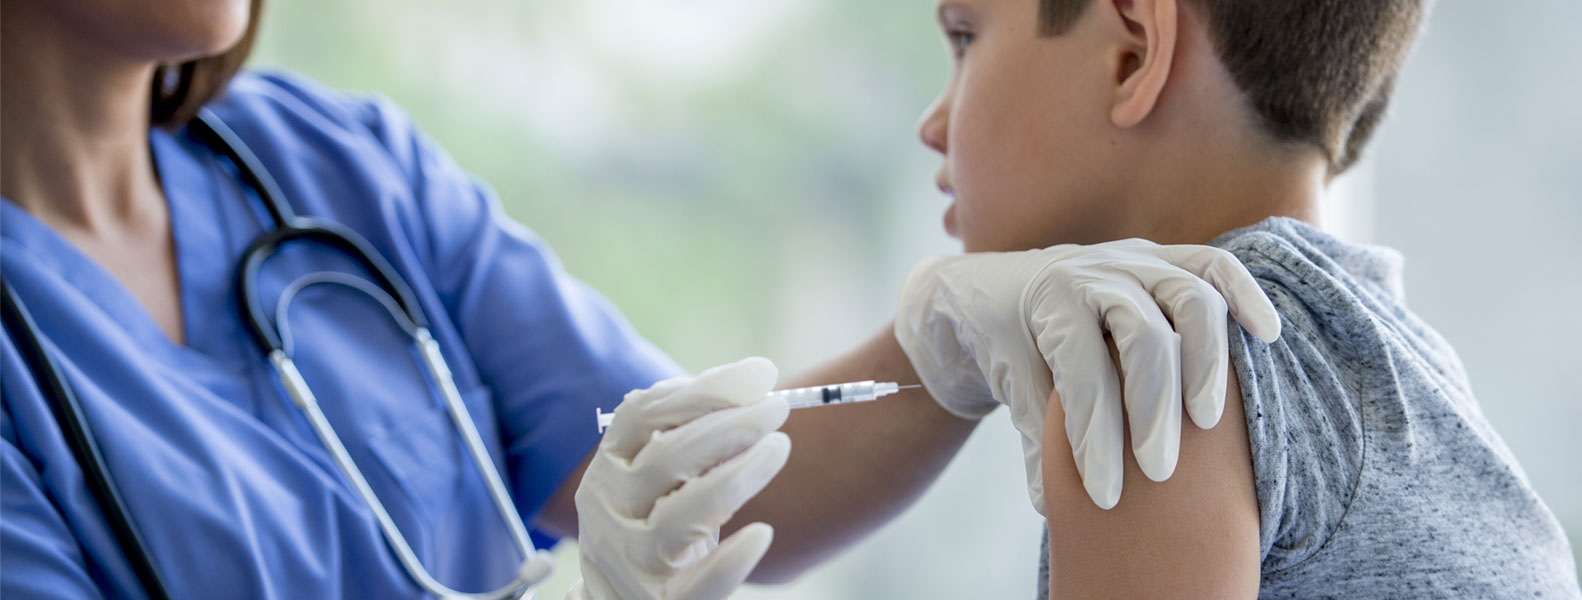 Vacunación en niños y niñas para evitar contagios